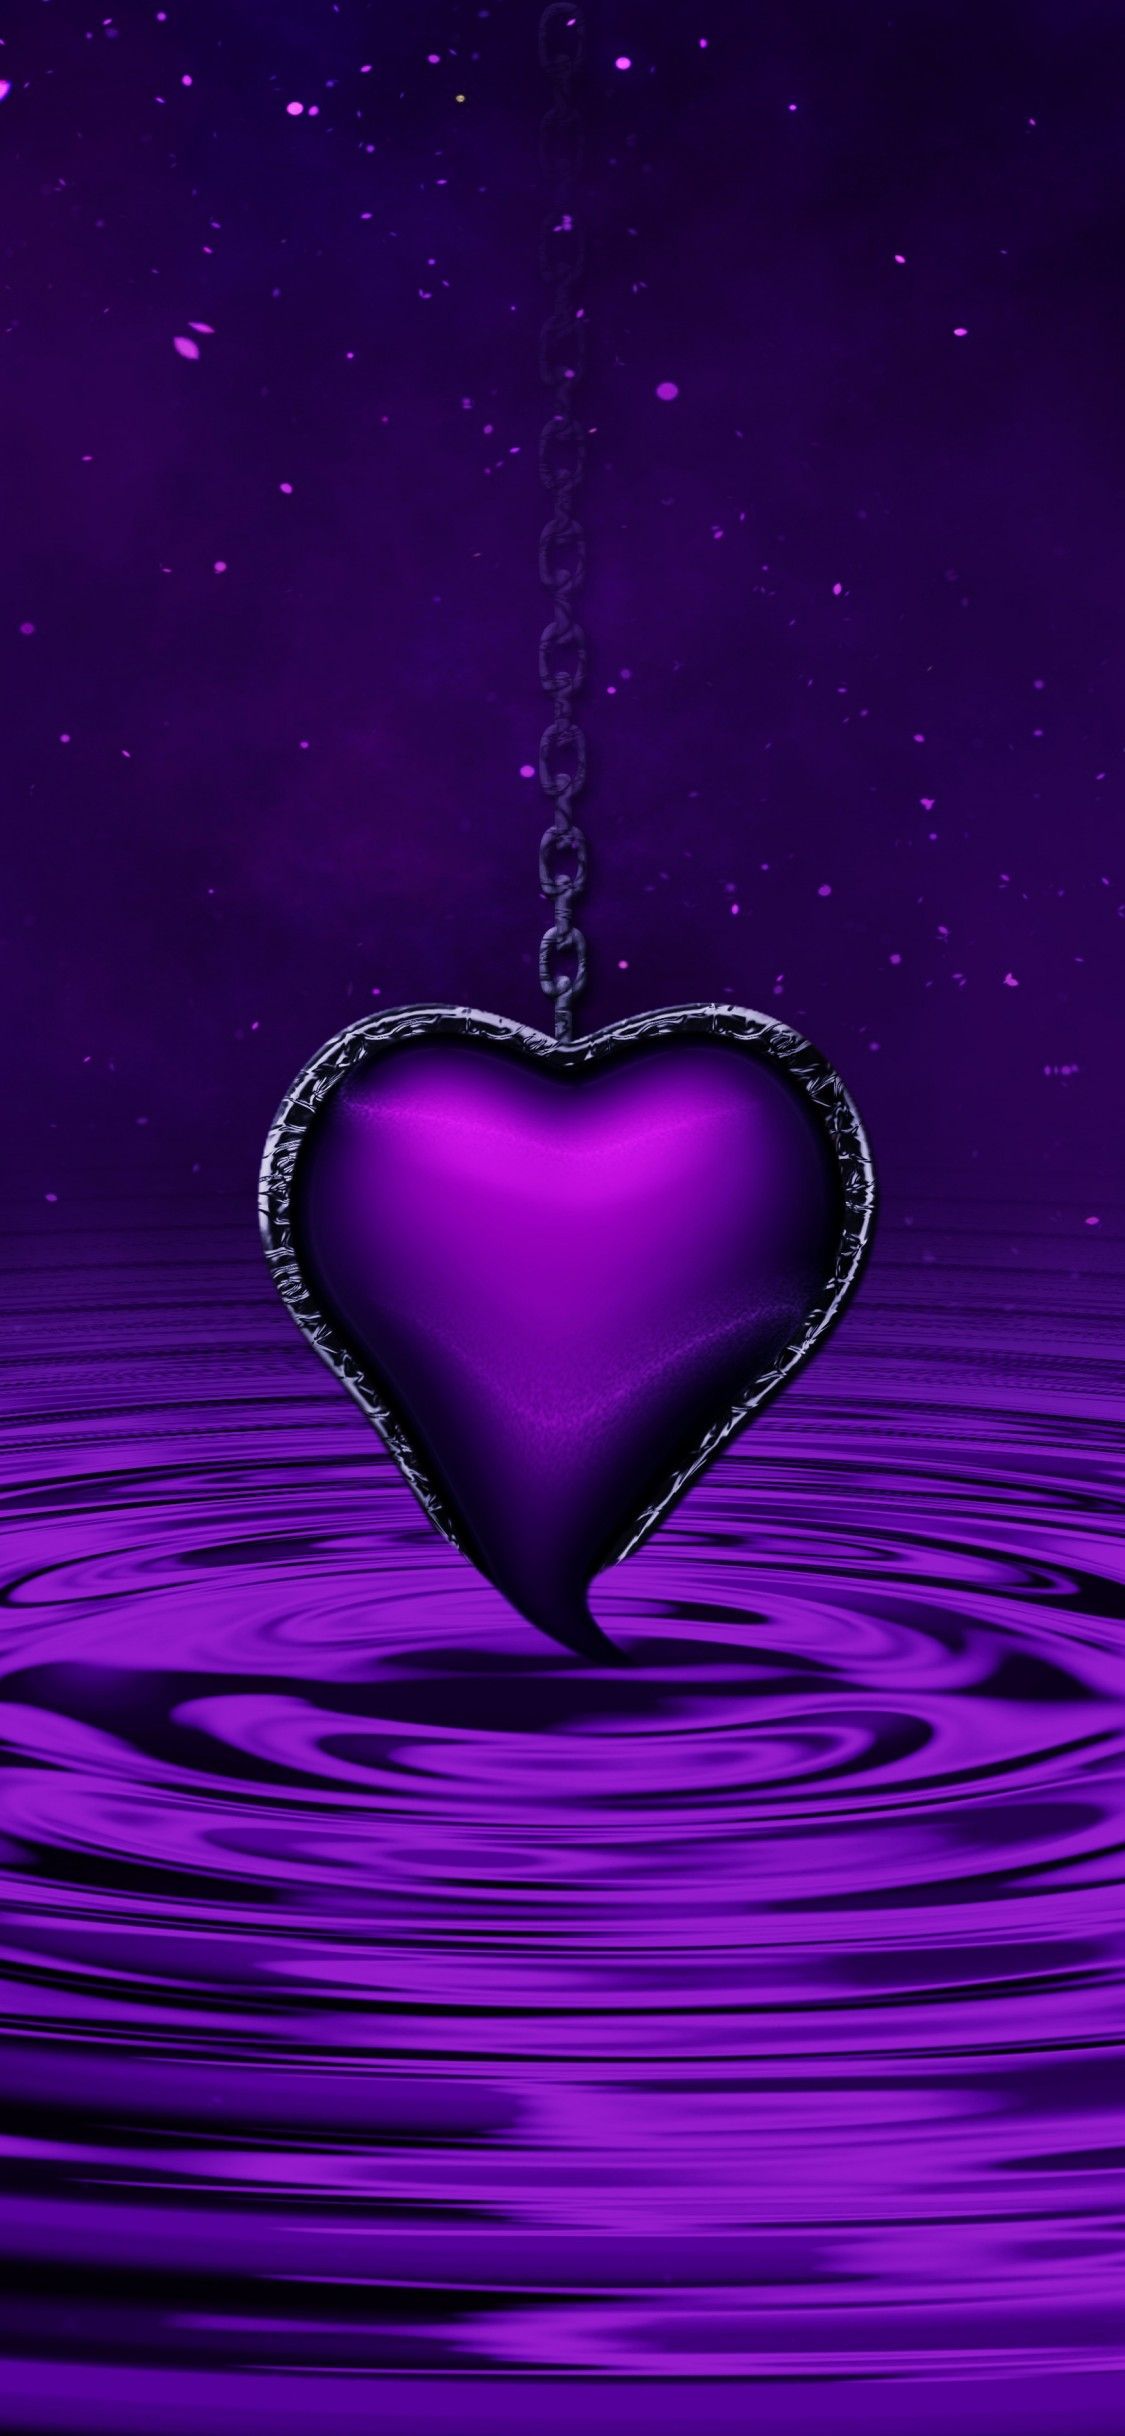 Purple Heart 4K Wallpaper, Water, Waves, Stars, Chain, Purple background, 5K, Love